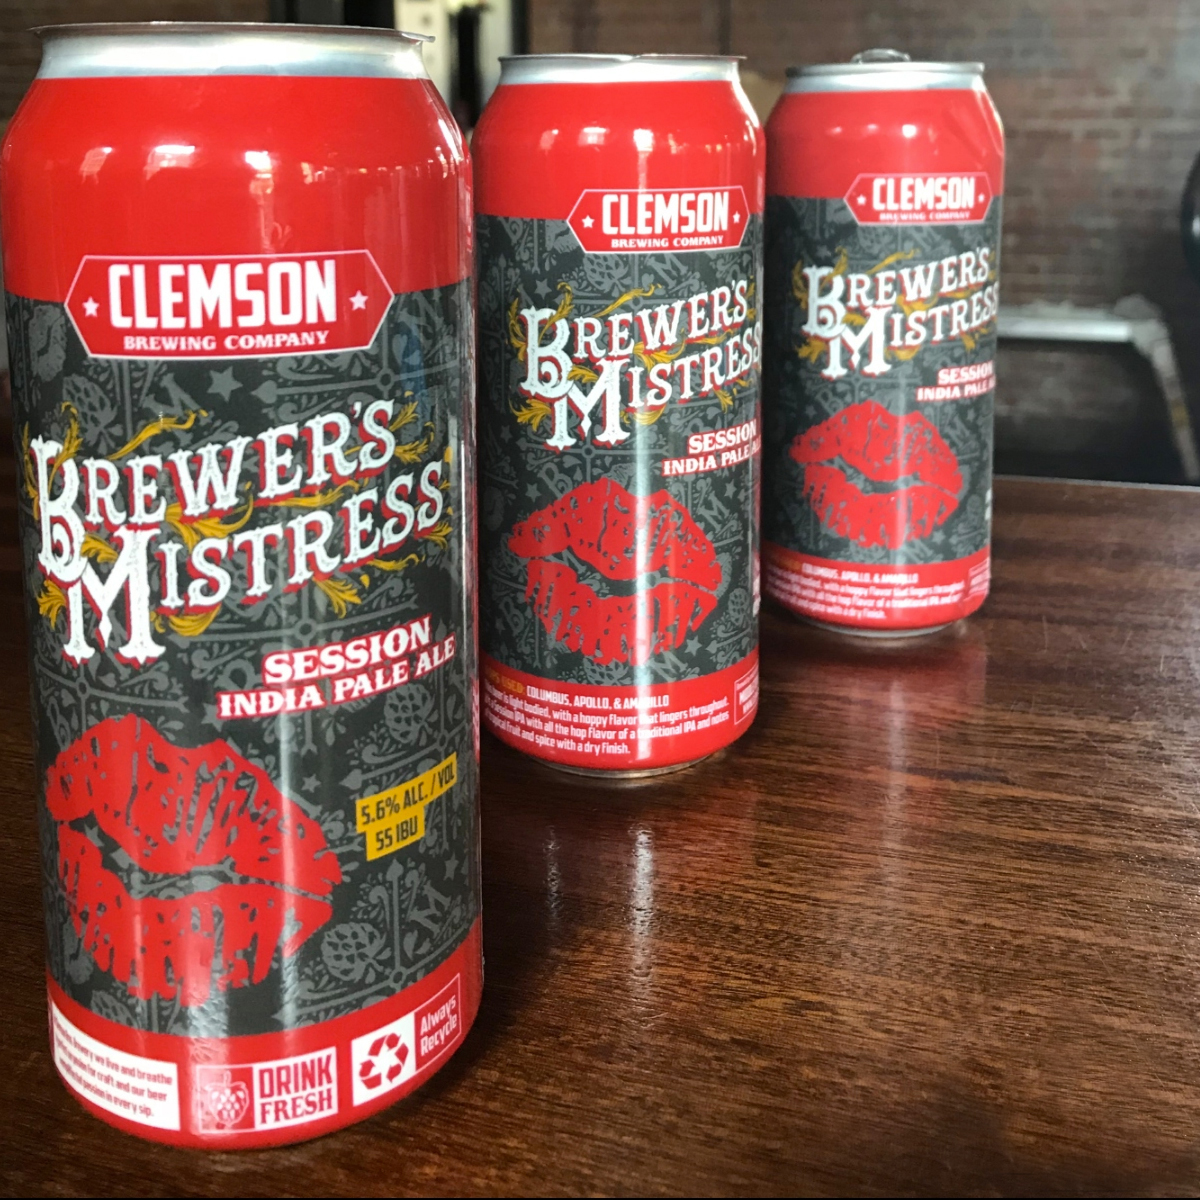 Clemson Bros. Brewery Brewer's Mistress